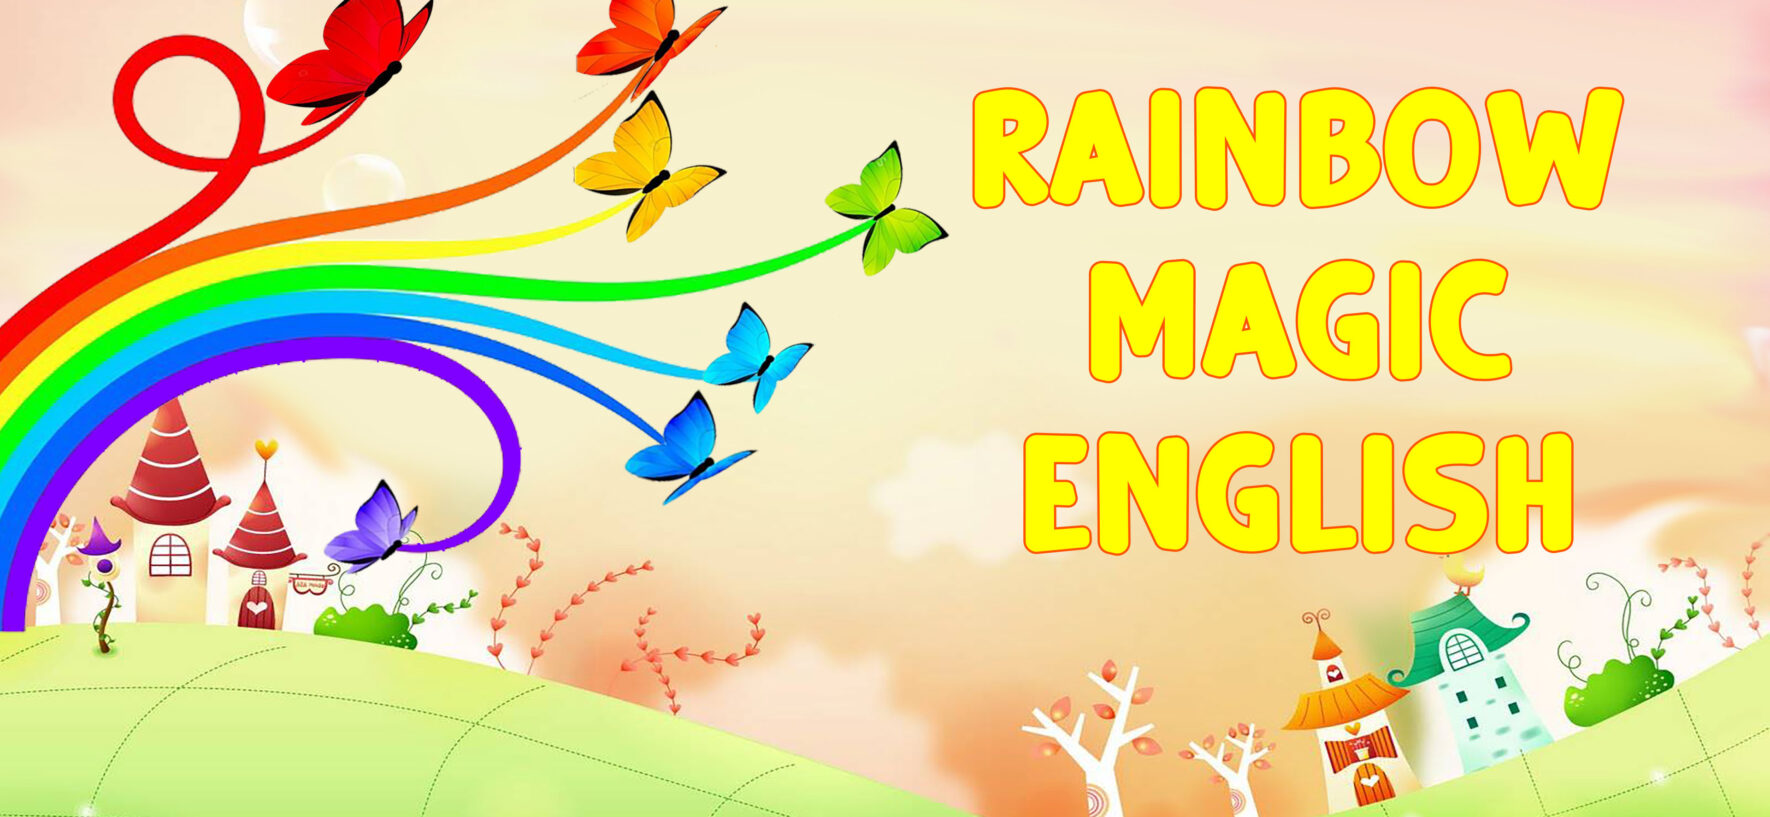 Rainbow Magic English, il nuovo canale Youtube dedicato ai più piccoli